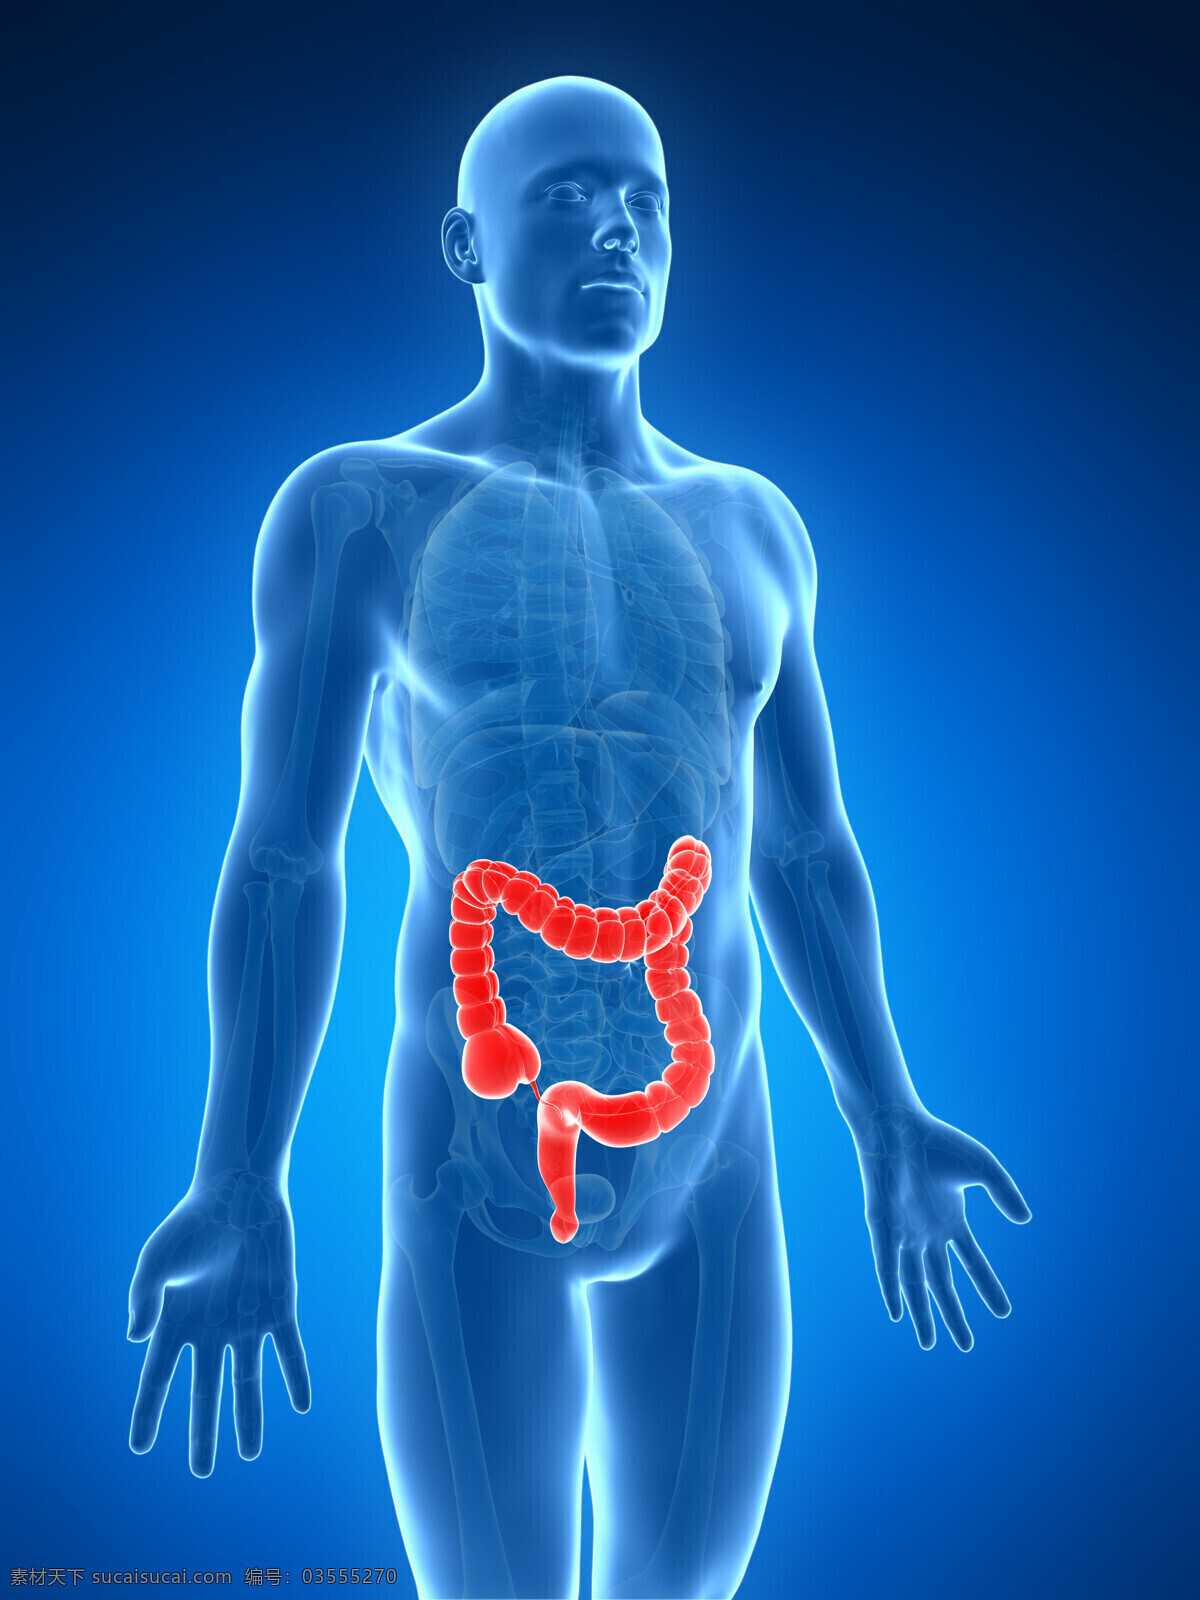 大肠 人体器官 肠道 消化系统 人体 人体组织 人体结构 医学 医疗 科学 医疗护理 现代科技